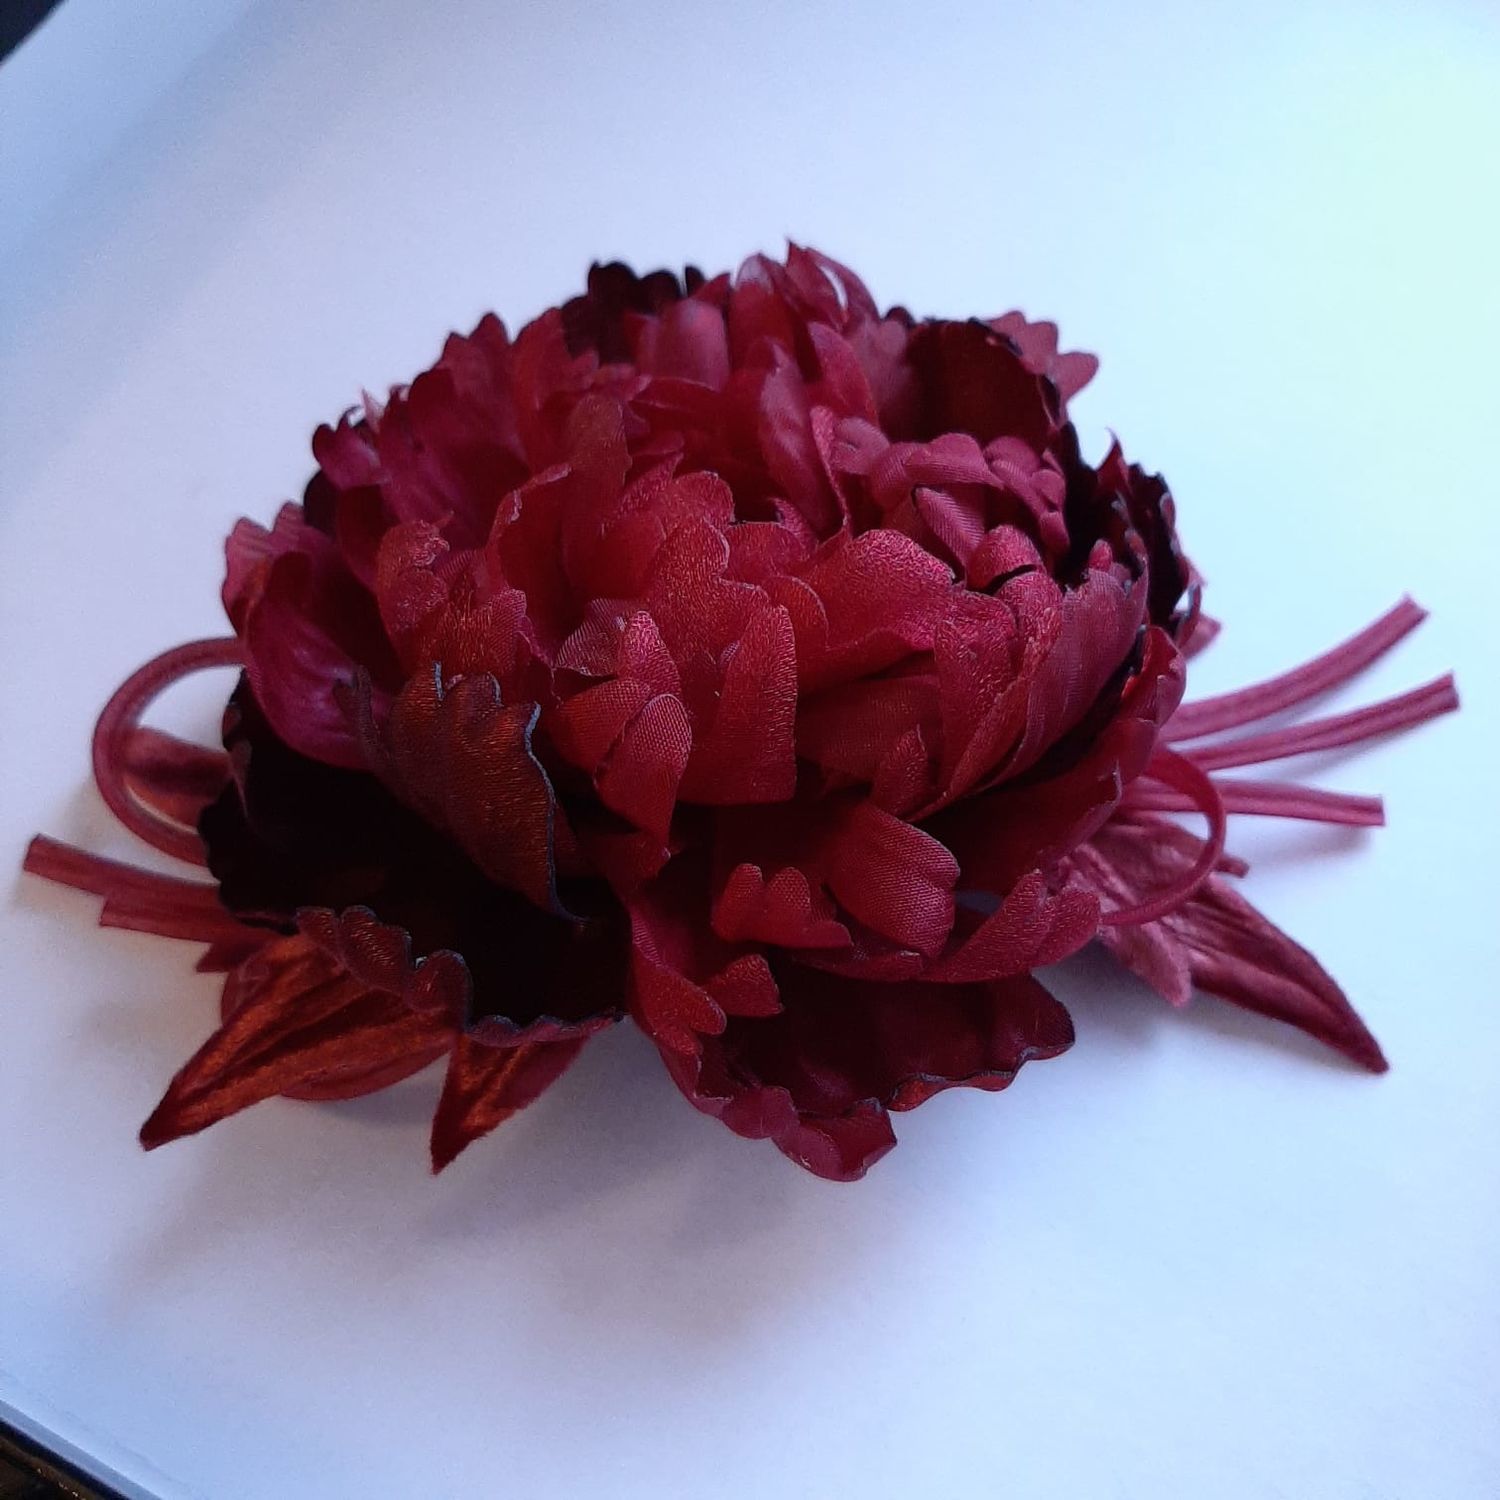 Фото №1 к отзыву покупателя vorobei4 о товаре Бордовый пион из кристалона и органзы. Цветы из ткани